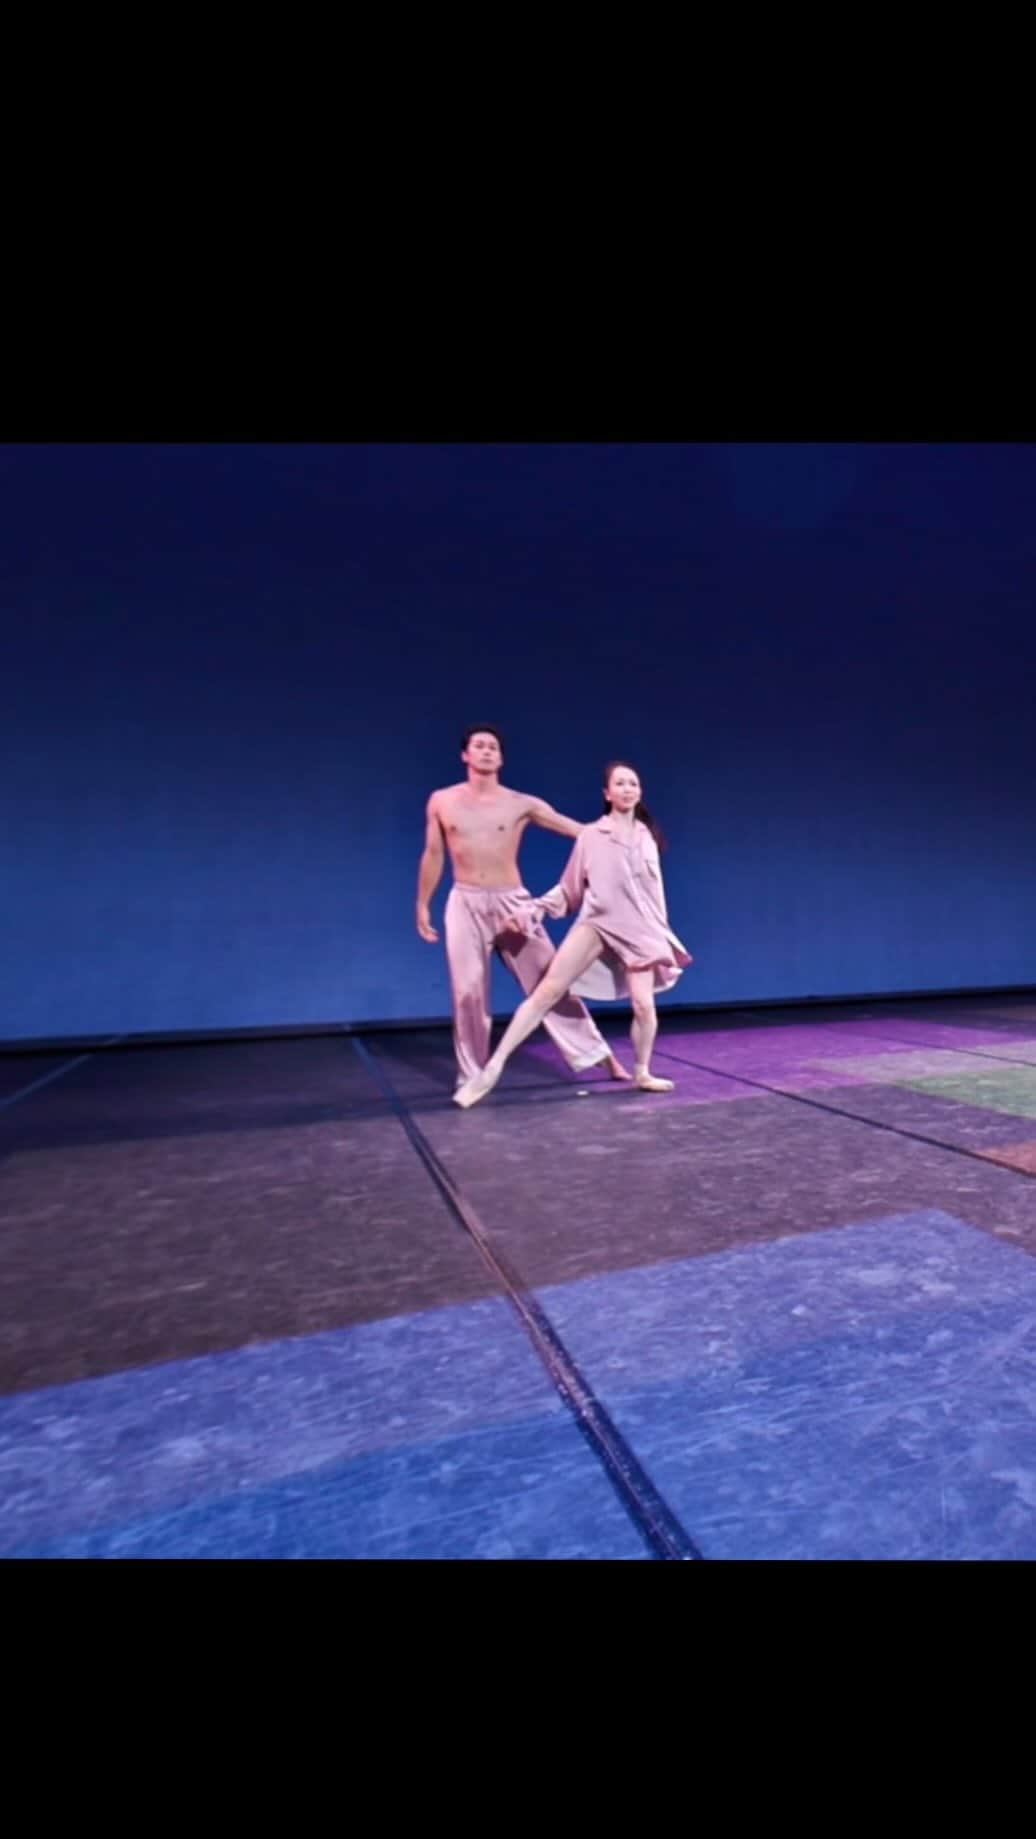 加治屋百合子のインスタグラム：「・ L‘ART GROUP presents  Ronald Petit HOMAGE『INFINITY – PREMIUM BALLET GALA 2023-』 @infinity_ballet_gala_2023   「Etudes/エチュード」 Choreography/振り付け: @megumi.choreographer  Partner/パートナー: @naoyaebe  Costume/衣装: @keitamaruyama   You can watch the full video from the YouTube link in my bio.   恩恵さんにリハーサルしていただいた際「こういうのはどうかな？」と多様なステップを見せていただく度、私にはないしなやかな身体のこなしと感覚、魅力的な表現に見惚れながらいっぱい勉強させていただきました☺️  3人でお互いを探りながらストーリーを作るプロセスは、とても充実した時間でした🌟  こちらの動画全編はVR映像でプロフィールのYouTubeリンクからご覧いただけます💓  以下、 @tamiyo_kusakari_official さんのページより❤️  中村恩恵さんは唯一無二のダンサー。私は彼女のパフォーマンスを拝見するたびに、未だにその凄さに驚かされています。今回、百合子さんがご出演するにあたり、日本のお客様に向けて新たな一面をお見せできるのではないかと、振付家として私が絶大な信頼を寄せている恩恵さんの作品をご提案させていただきました。江部さんとも面白い組み合わせになると思いました。恩恵さん、百合子さん、江部さんのクリエイション、そして、丸山敬太さんの衣装によって、「エチュード」は大人の男女が織りなす様々な情景が、心地よく観る人の心を捉える、情感豊かな作品となりました。」